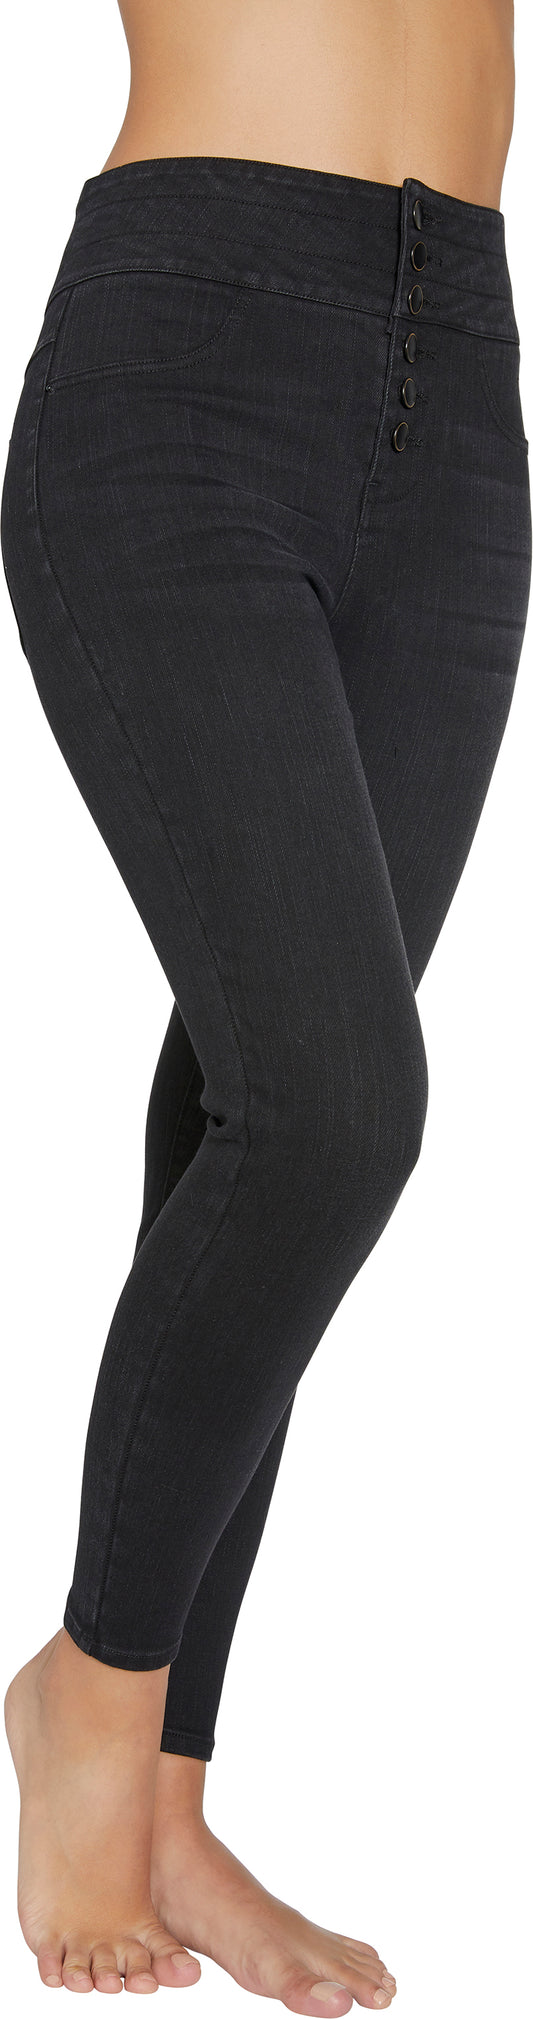 Ysabel Mora 70268 Jeggings - black high waisted denim leggings